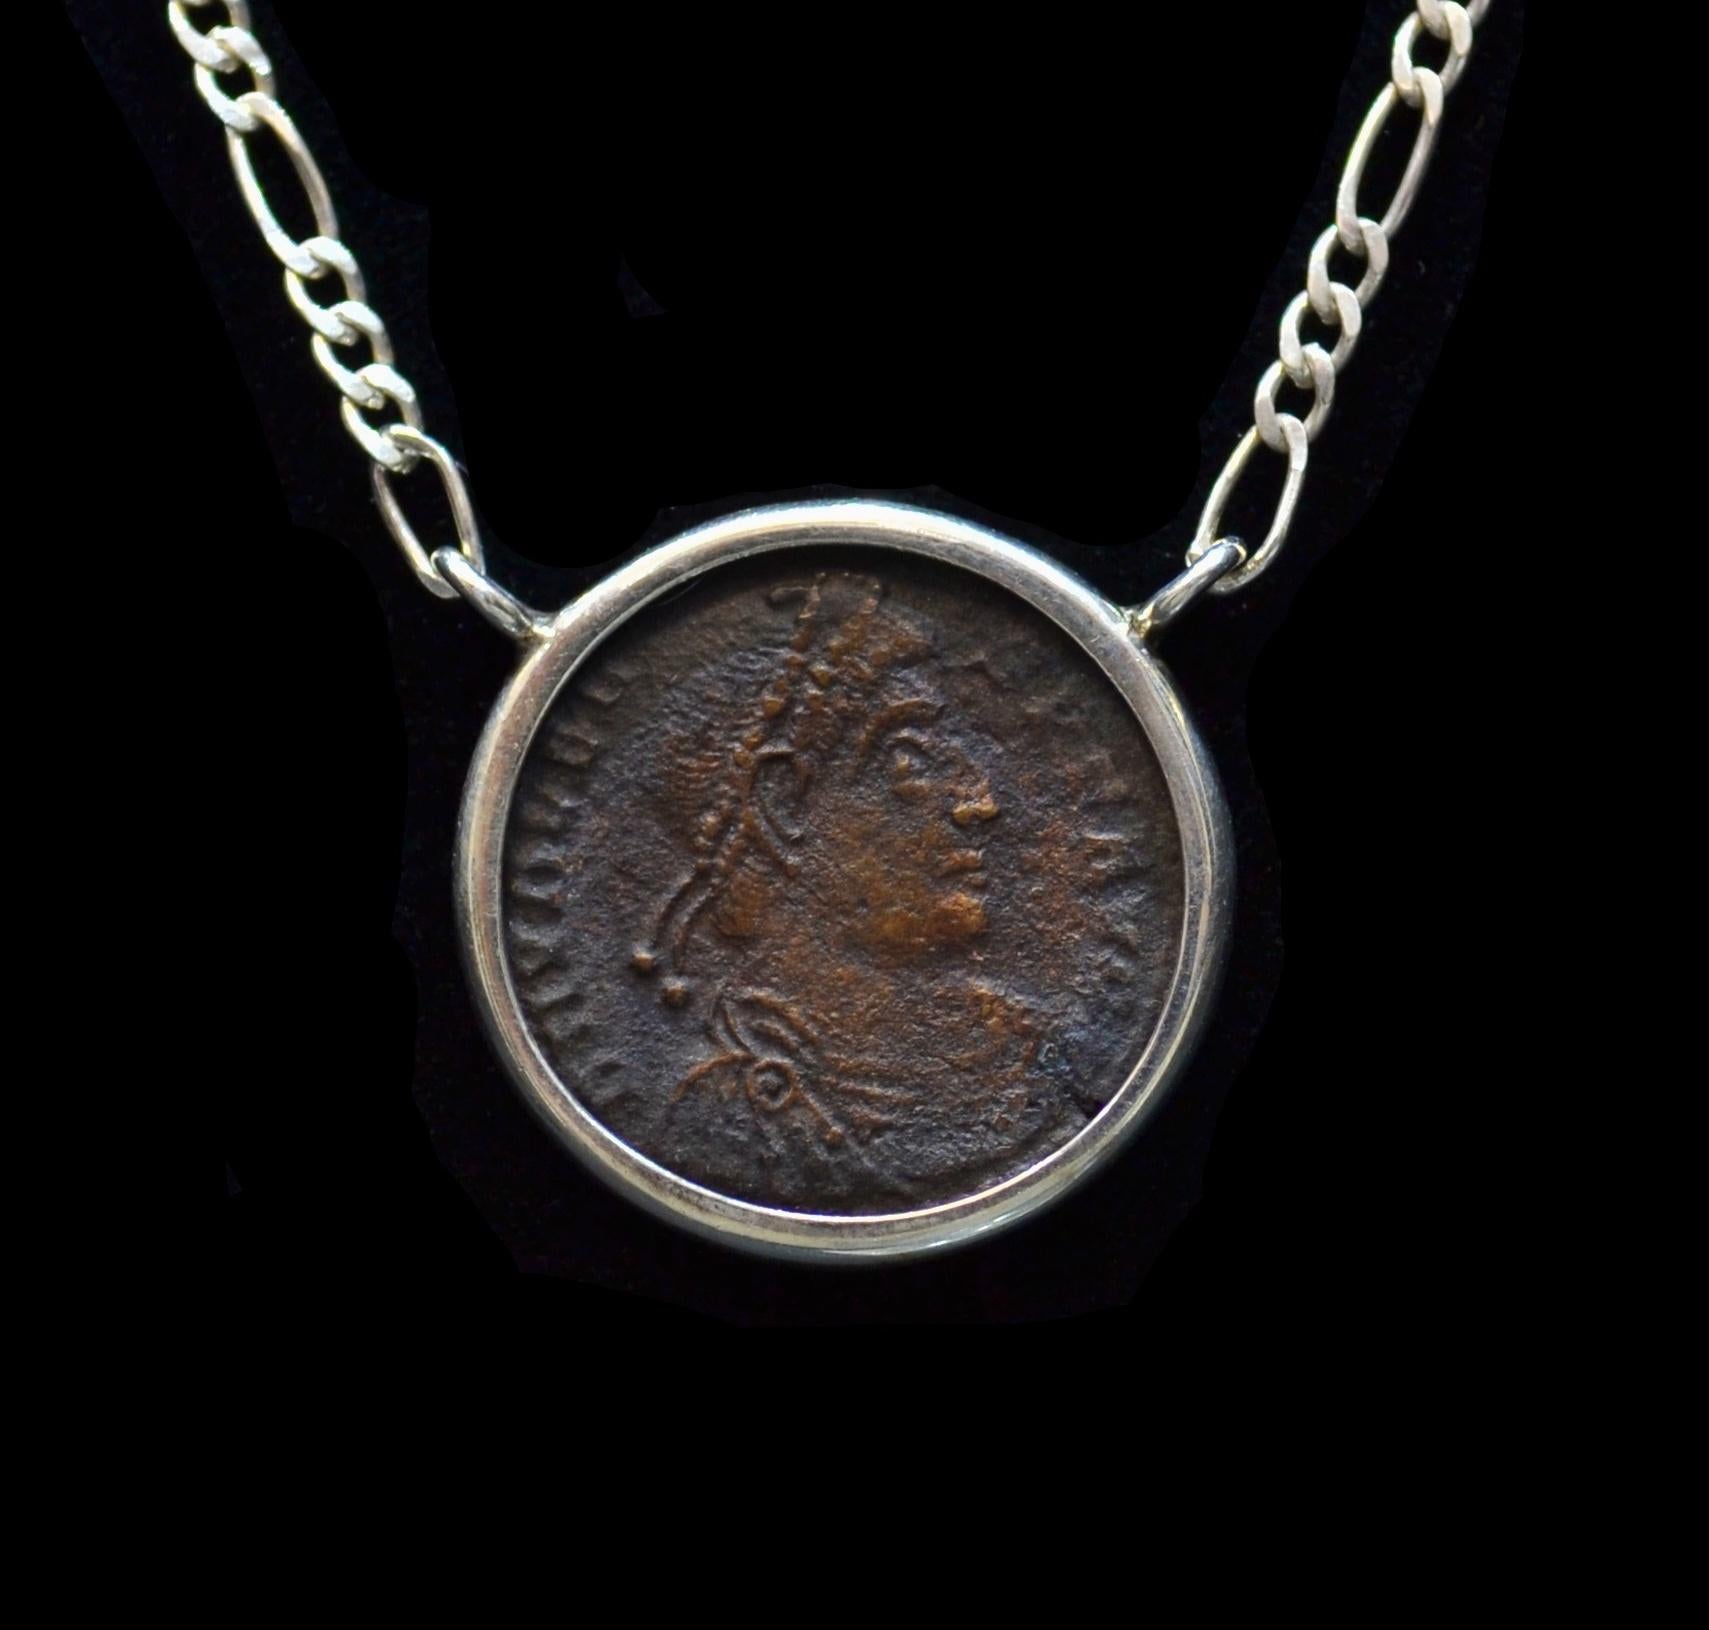 Authentique pièce romaine en bronze datant de 364 à 375 de notre ère  monté sur un collier contemporain en argent. Prêt à être porté !

Également connu sous le nom de Valentinien le Grand, lorsqu'il est devenu empereur, il a fait de son frère Valens